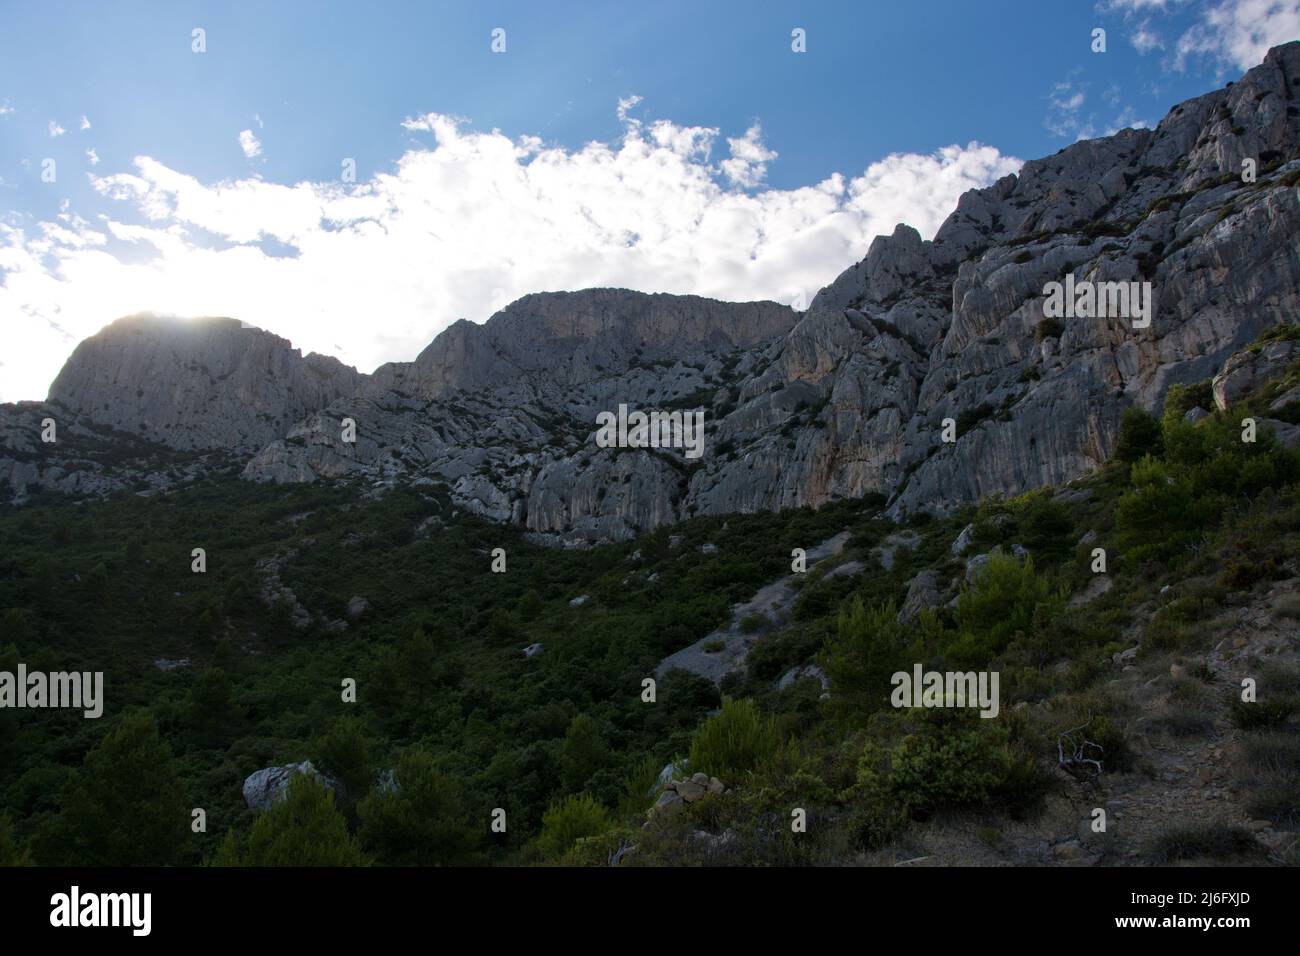 Die spektakuläre Montagne Sainte-Victoire, Kalksteingebirge im Süden Frankreichs in der Nähe von Aix-en-Provence Foto Stock